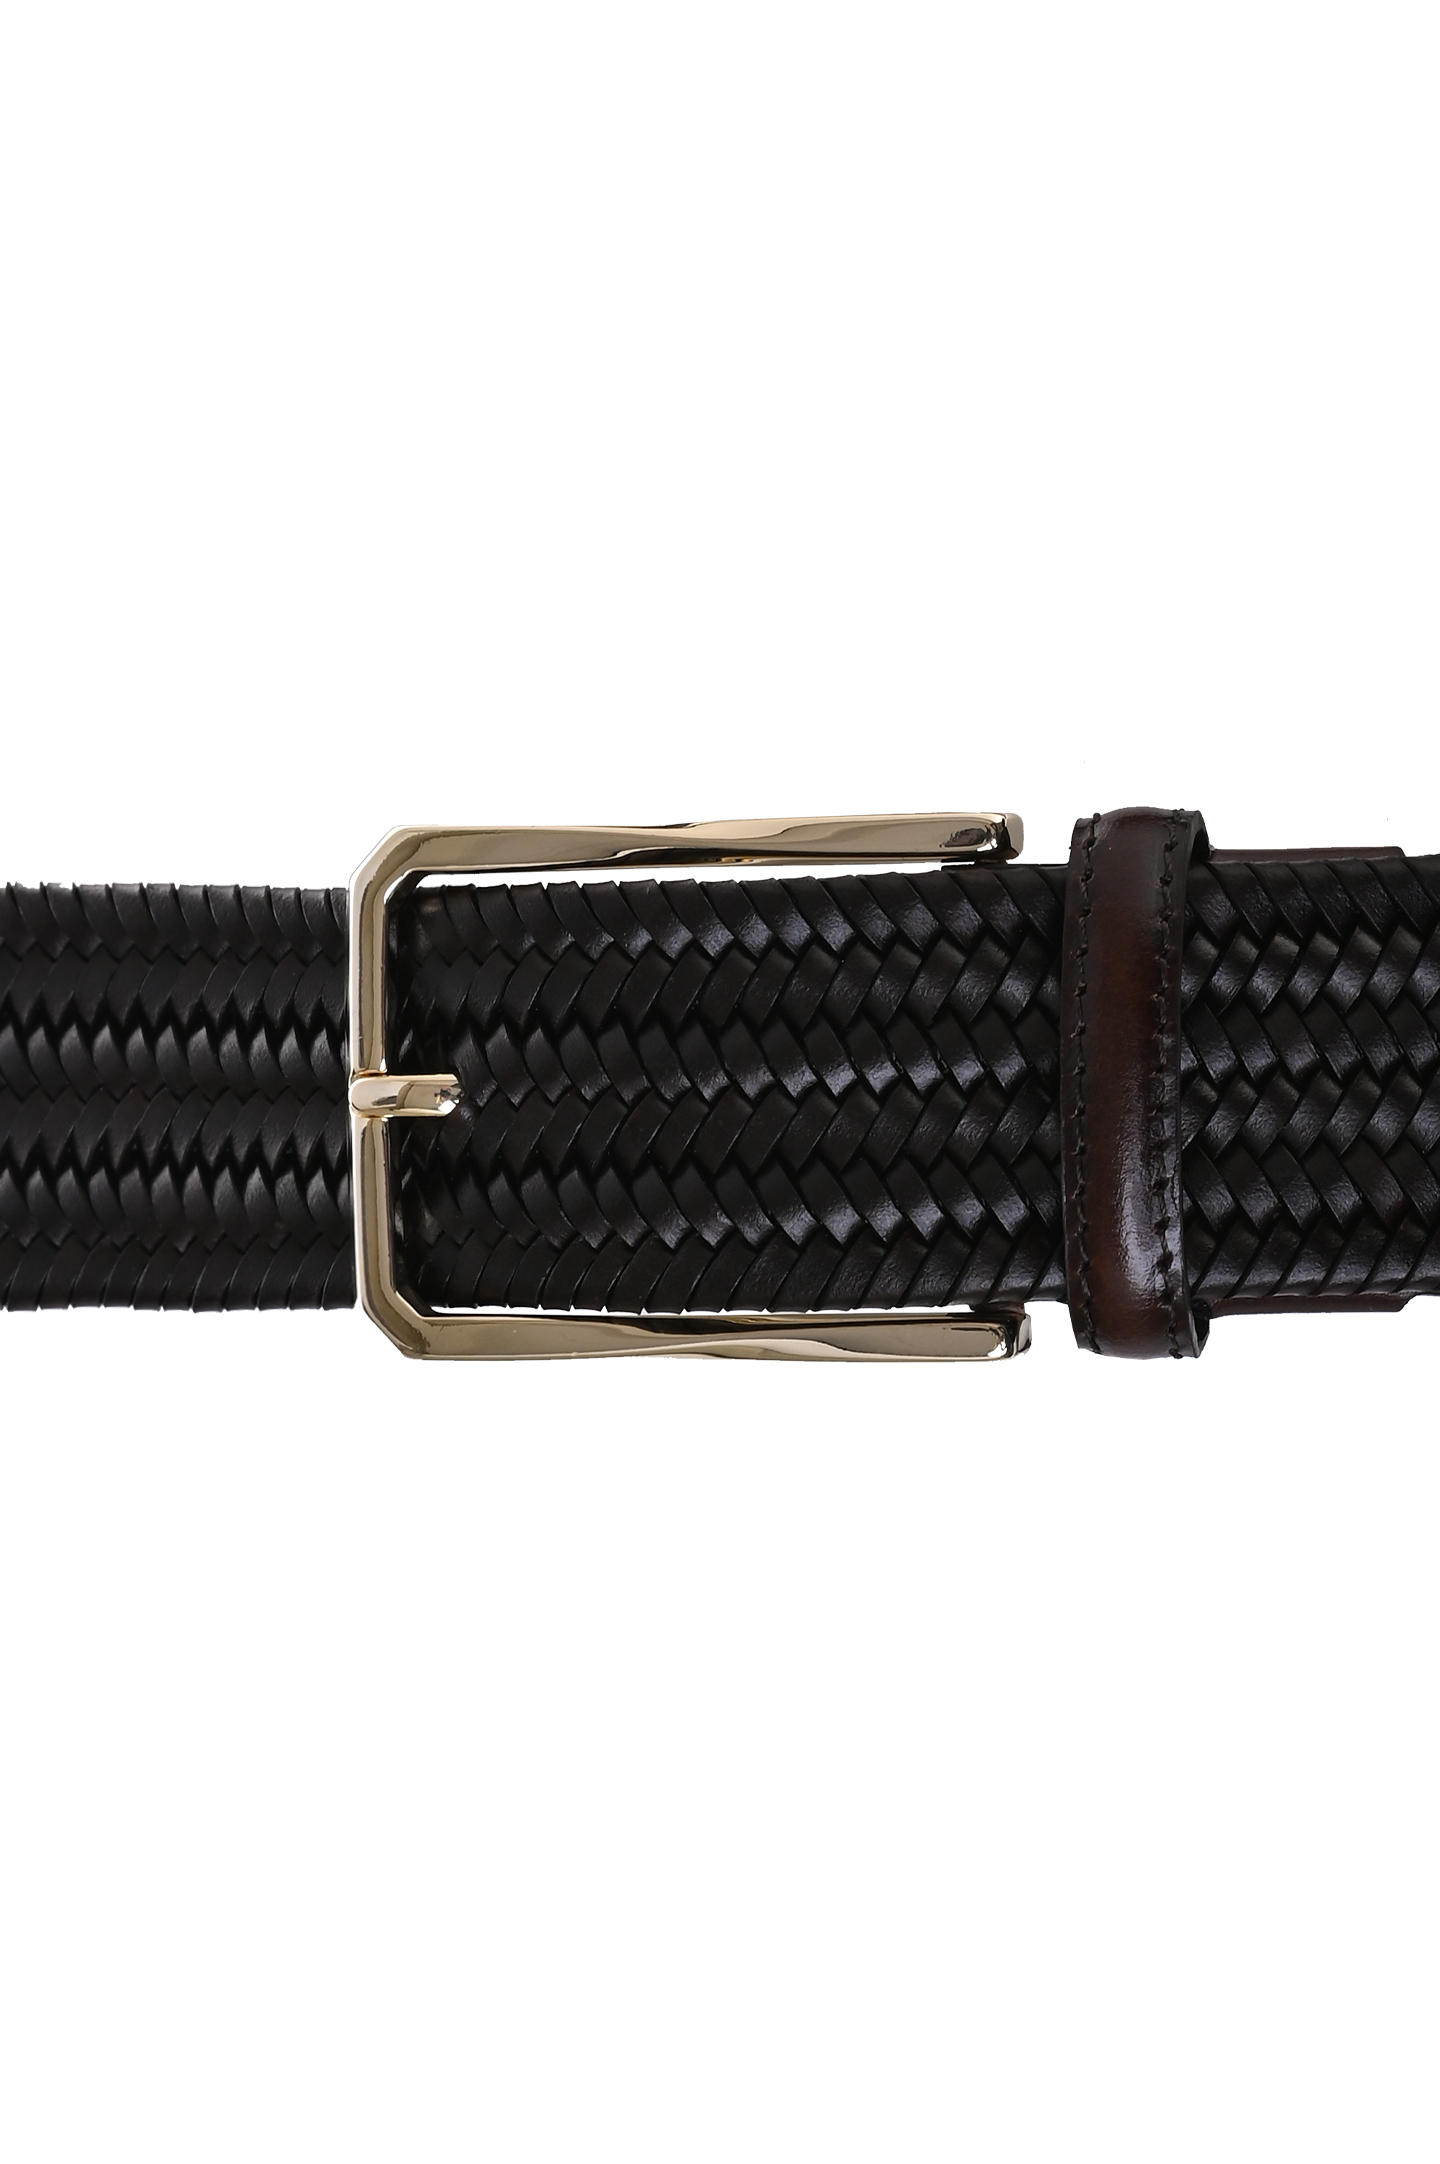 Плетеный кожаный ремень CANALI KA00441 50C, цвет: Темно-коричневый, Мужской